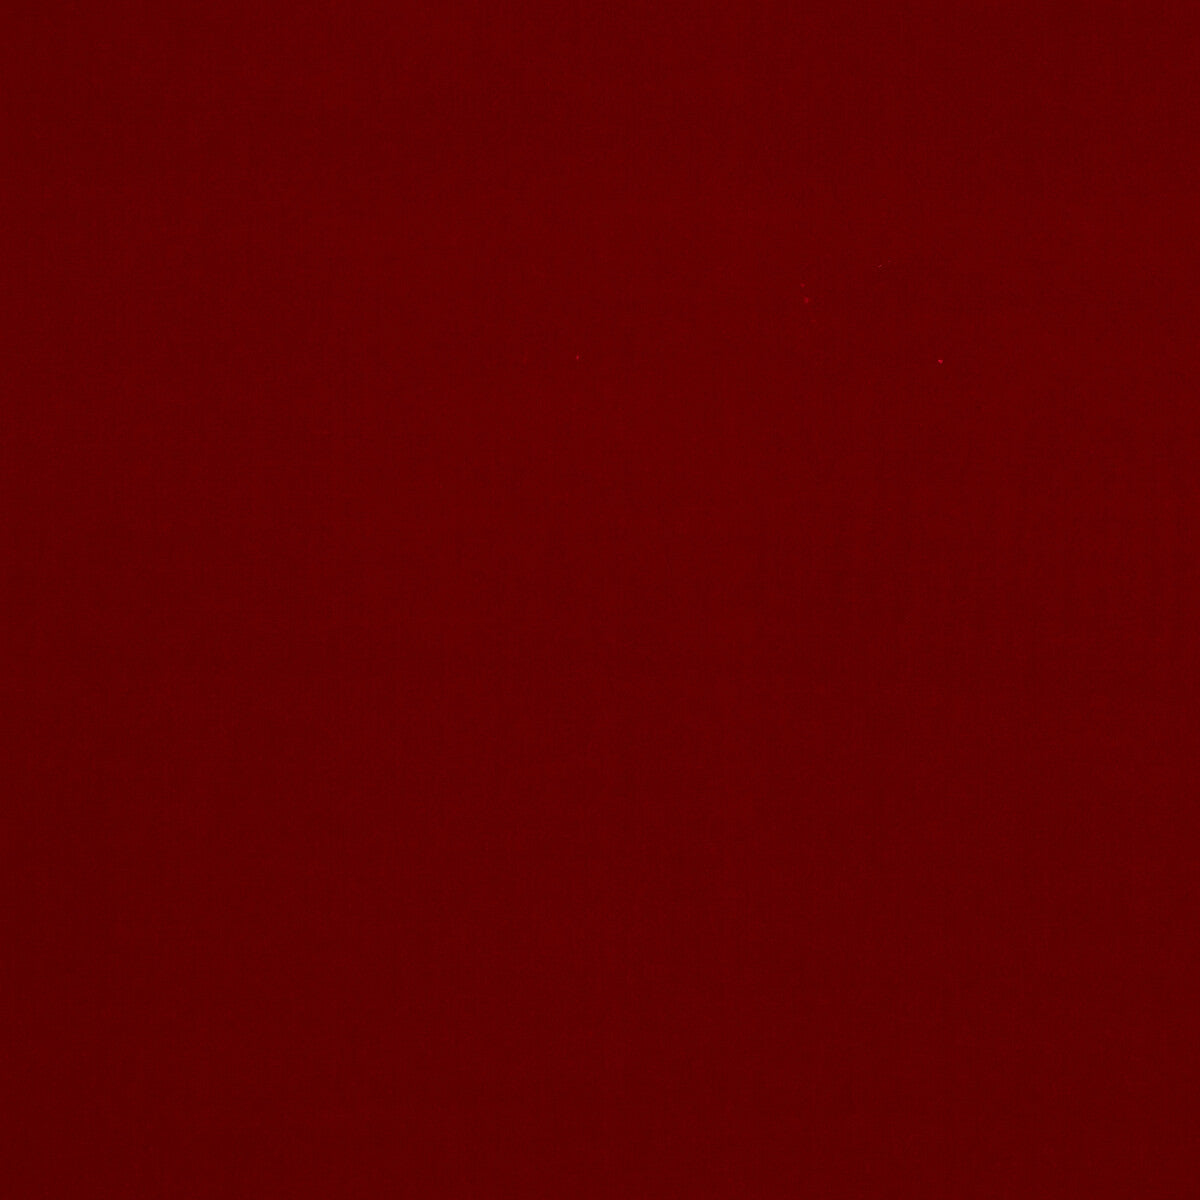 Baker House Velvet fabric in red color - pattern BF10838.450.0 - by G P &amp; J Baker in the Baker House Velvet collection